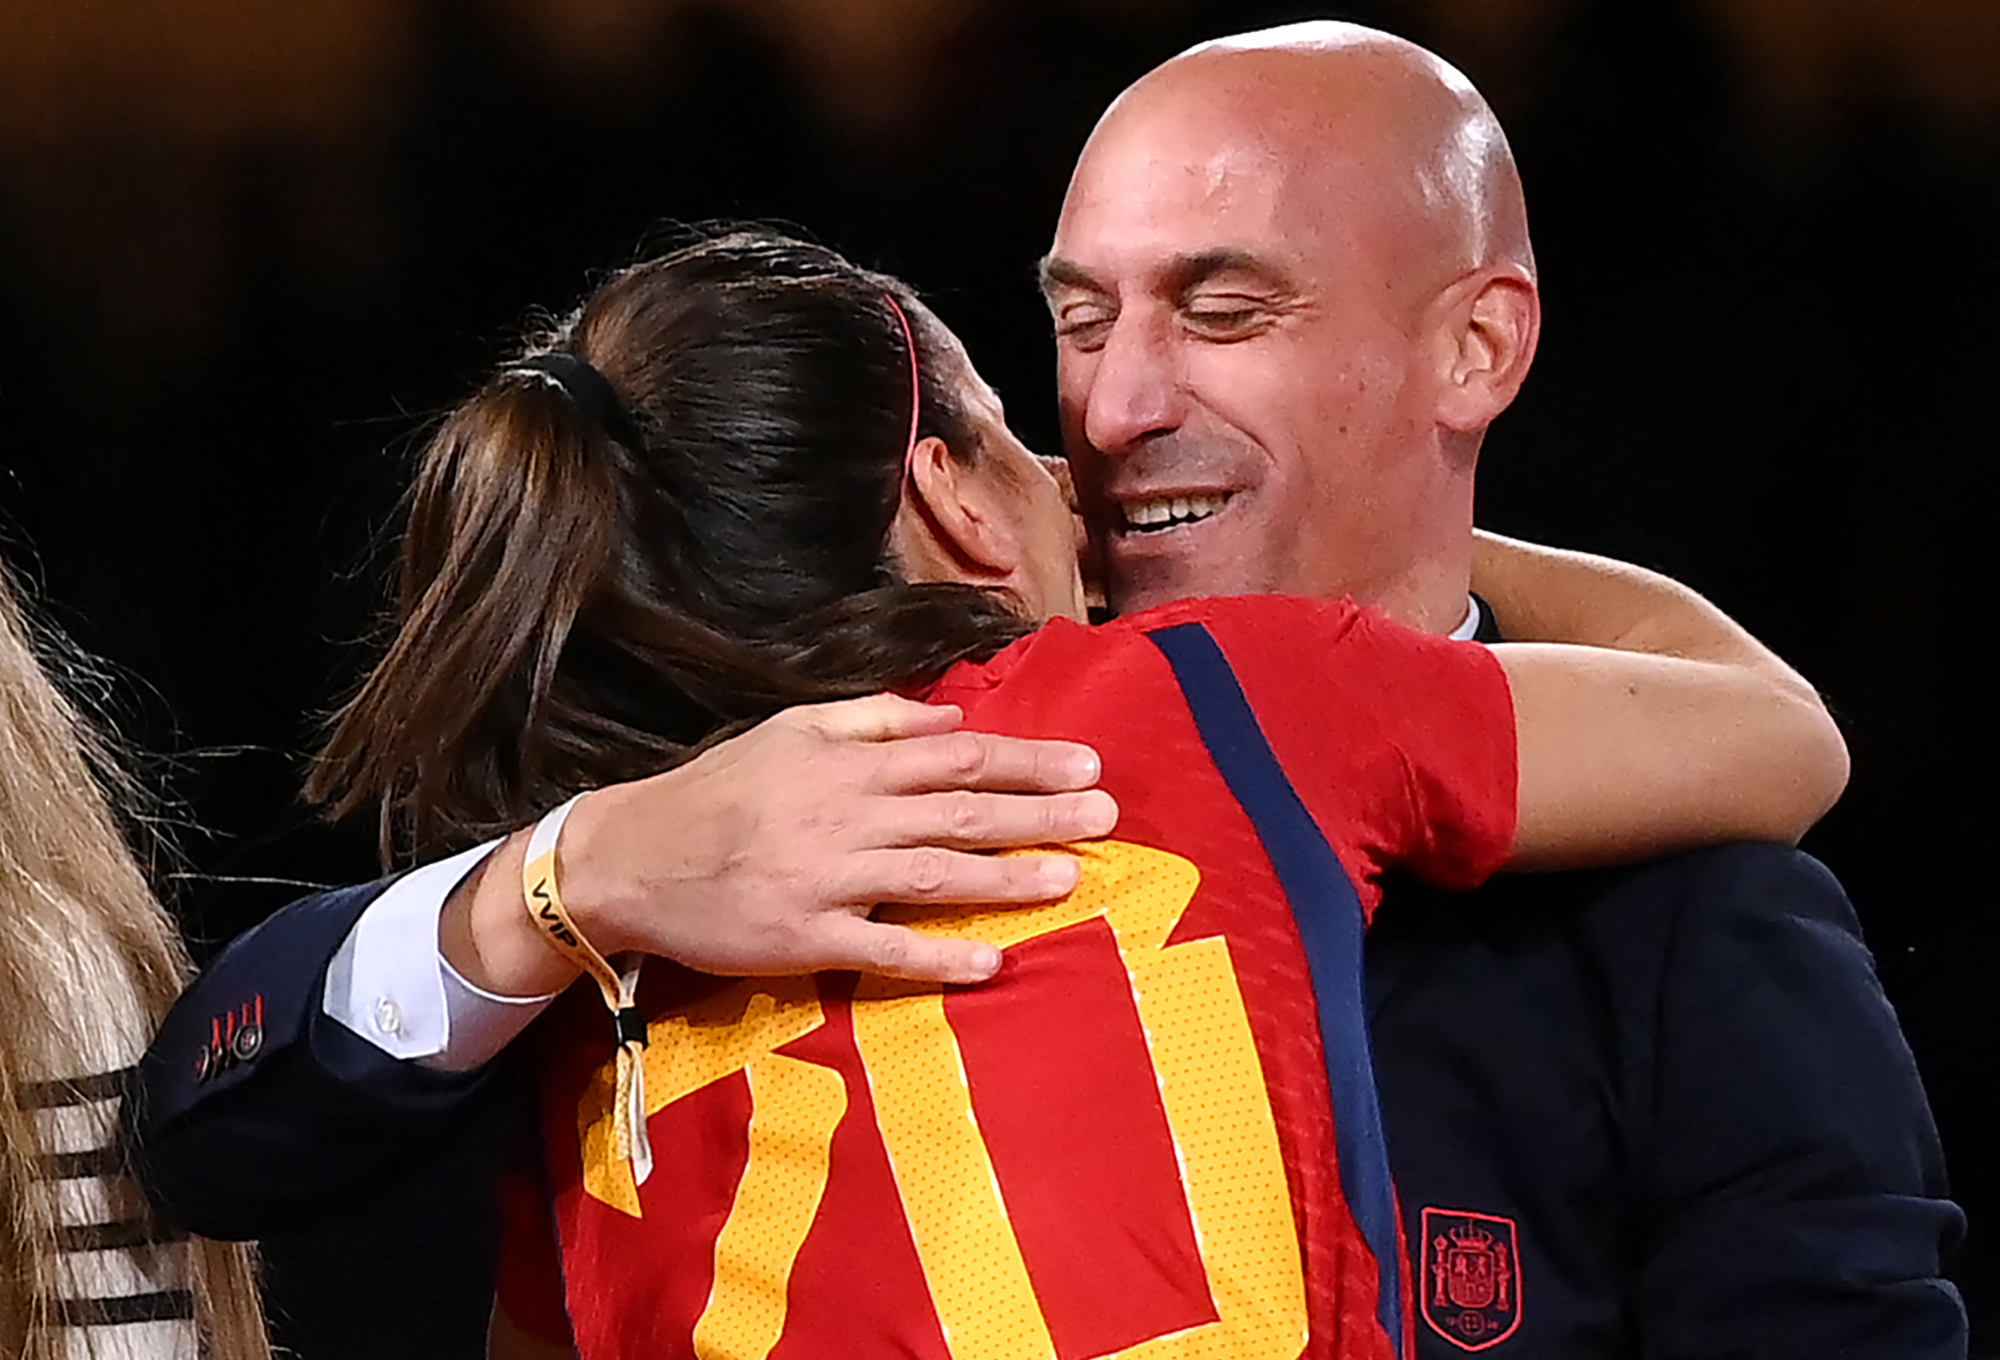 Luis Rubiales felicita a Rocío Gálvez luego de haber ganado el Mundial, en cuya celebración besó a la fuerza a la jugadora Jenni Hermoso. (Foto Prensa Libre: FRANCK FIFE / AFP)